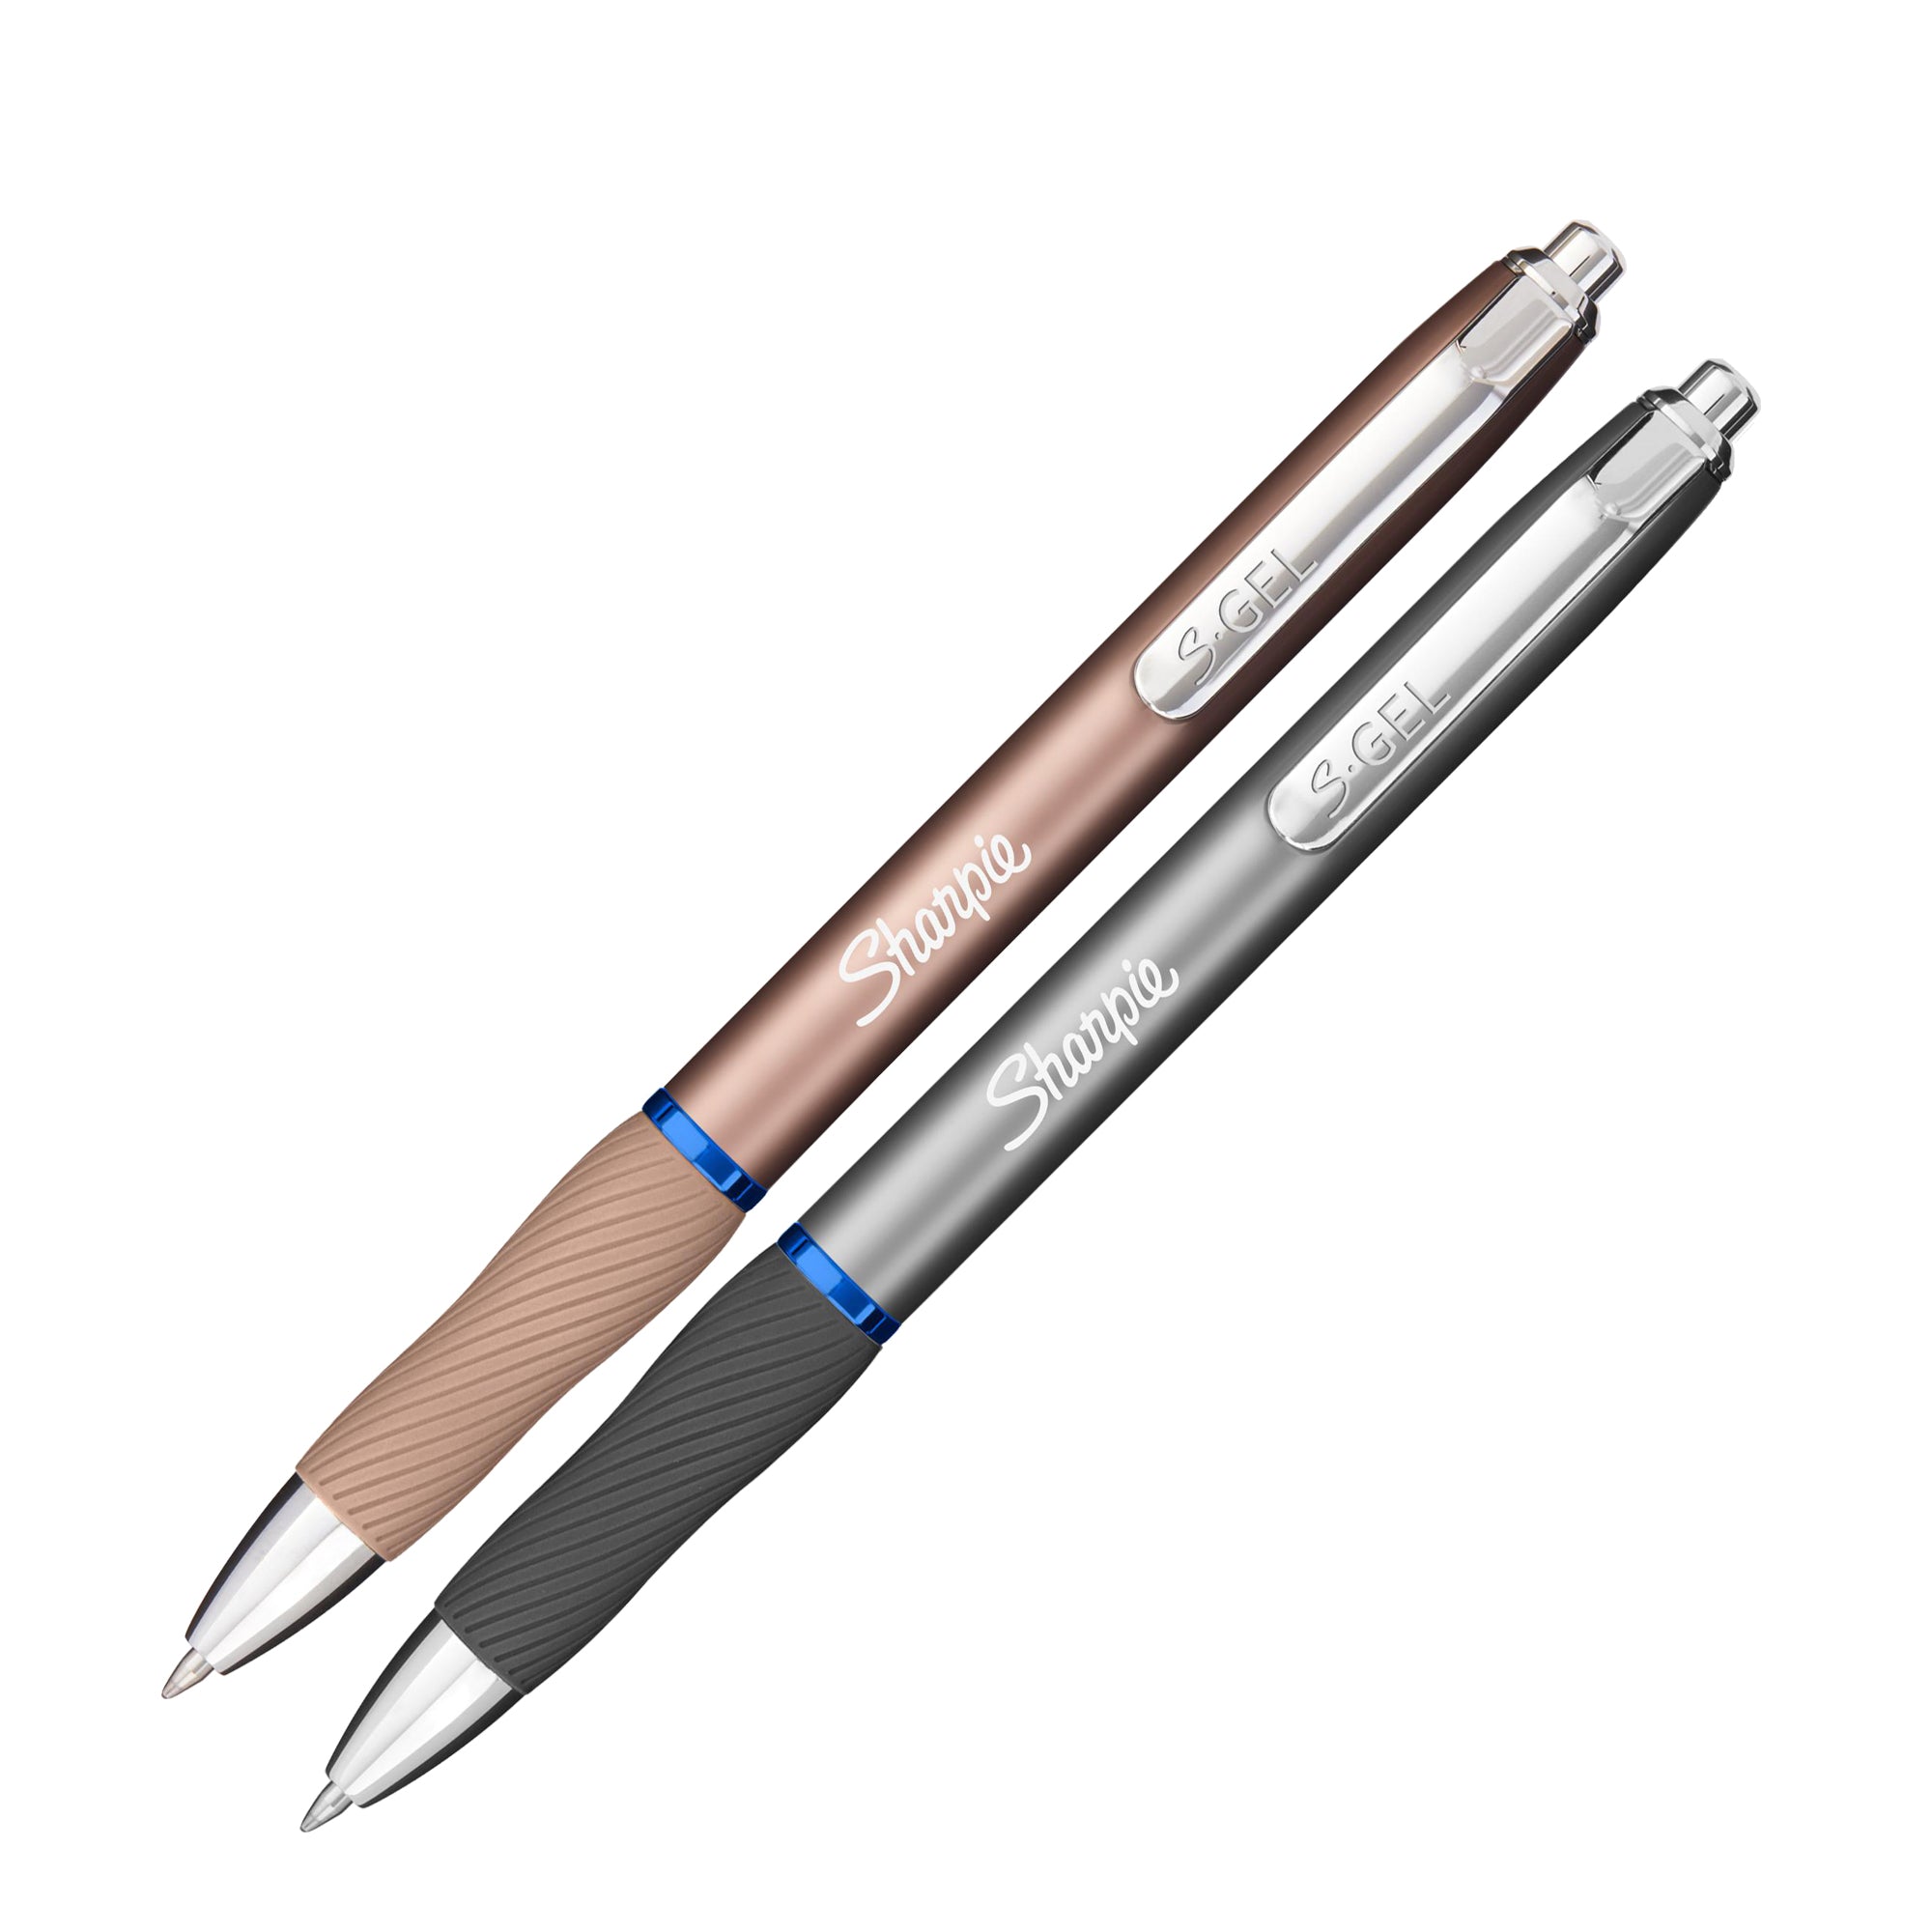 sharpie-penna-gel-scatto-0-7mm-inch-blu-fusto-colori-assortiti-metal